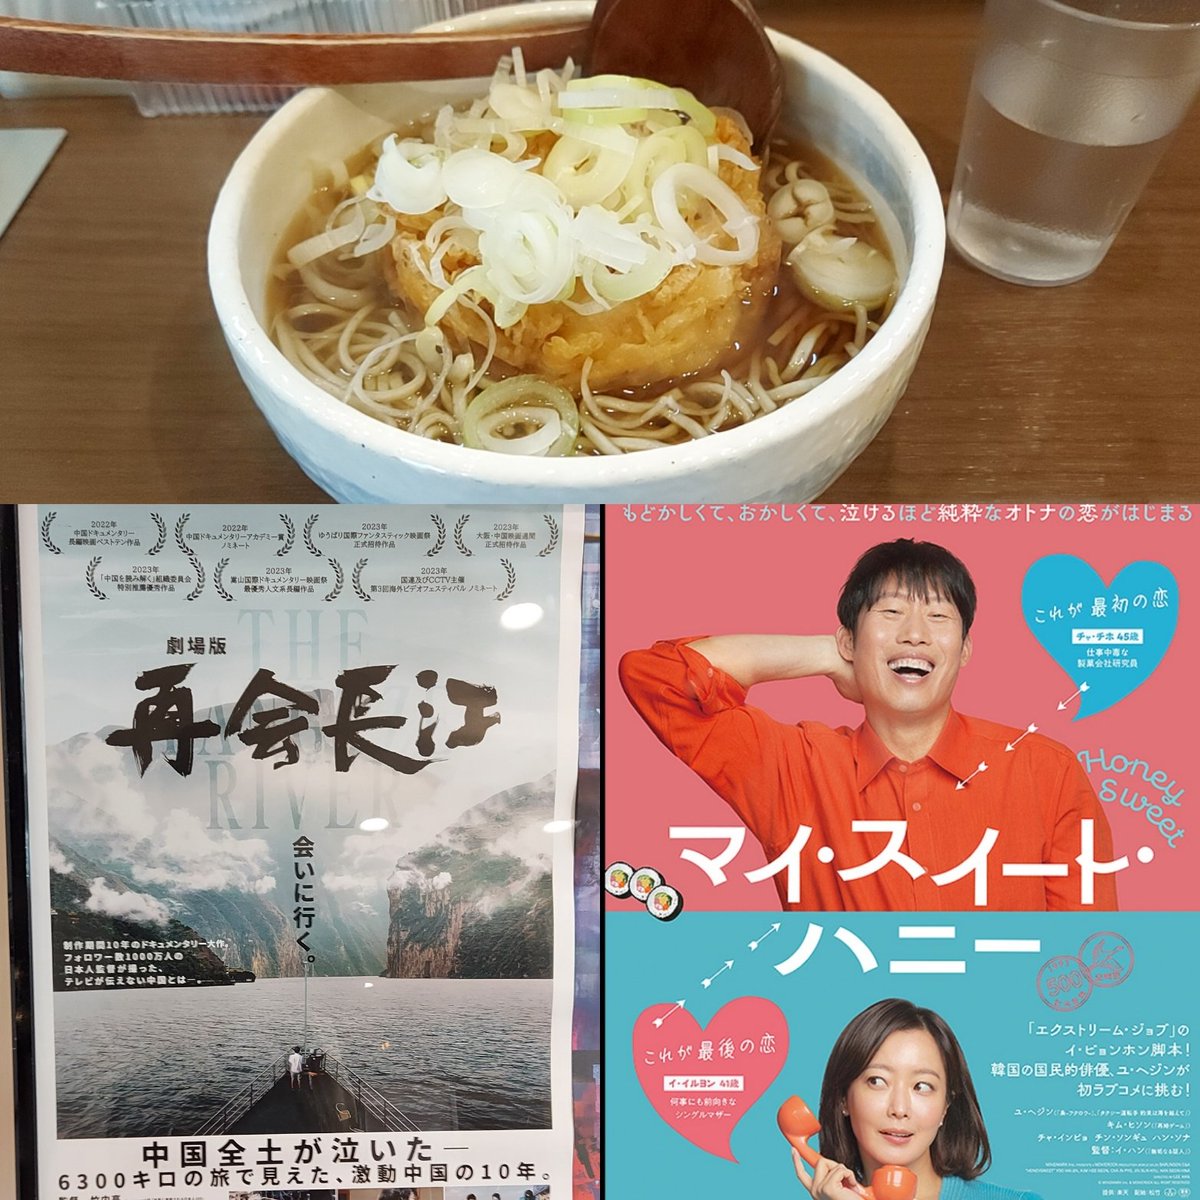 今日は有楽町で映画「劇場版 再会長江」をもう一度観て、あまり合間の時間がなく近くの蕎麦屋で「かき揚げ蕎麦」を食べた後、映画「マイ・スイート・ハニー」を観ました。